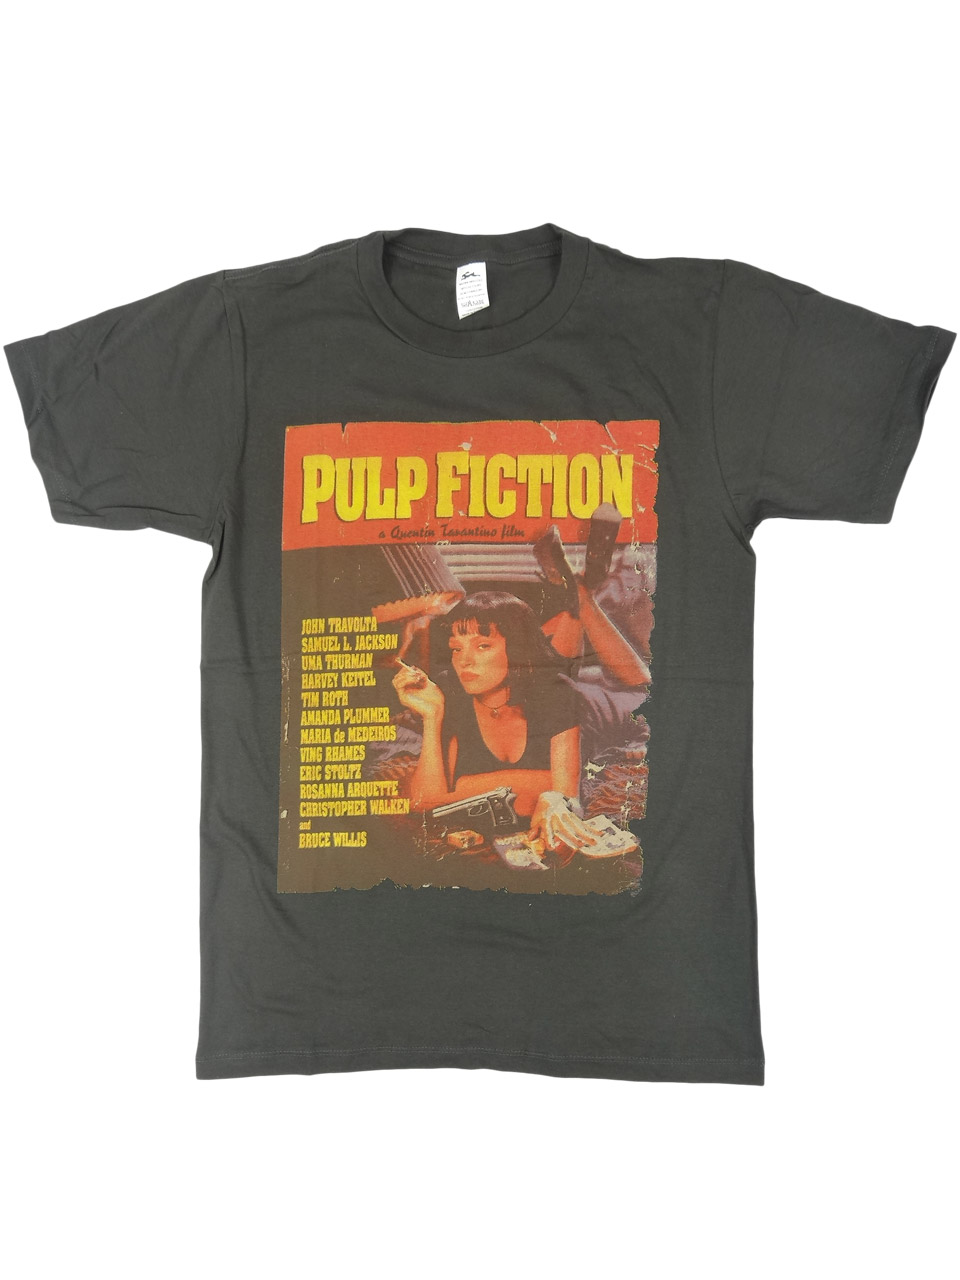 ヴィンテージ風 Tシャツ Pulp Fiction パルプ フィクション brt-0226